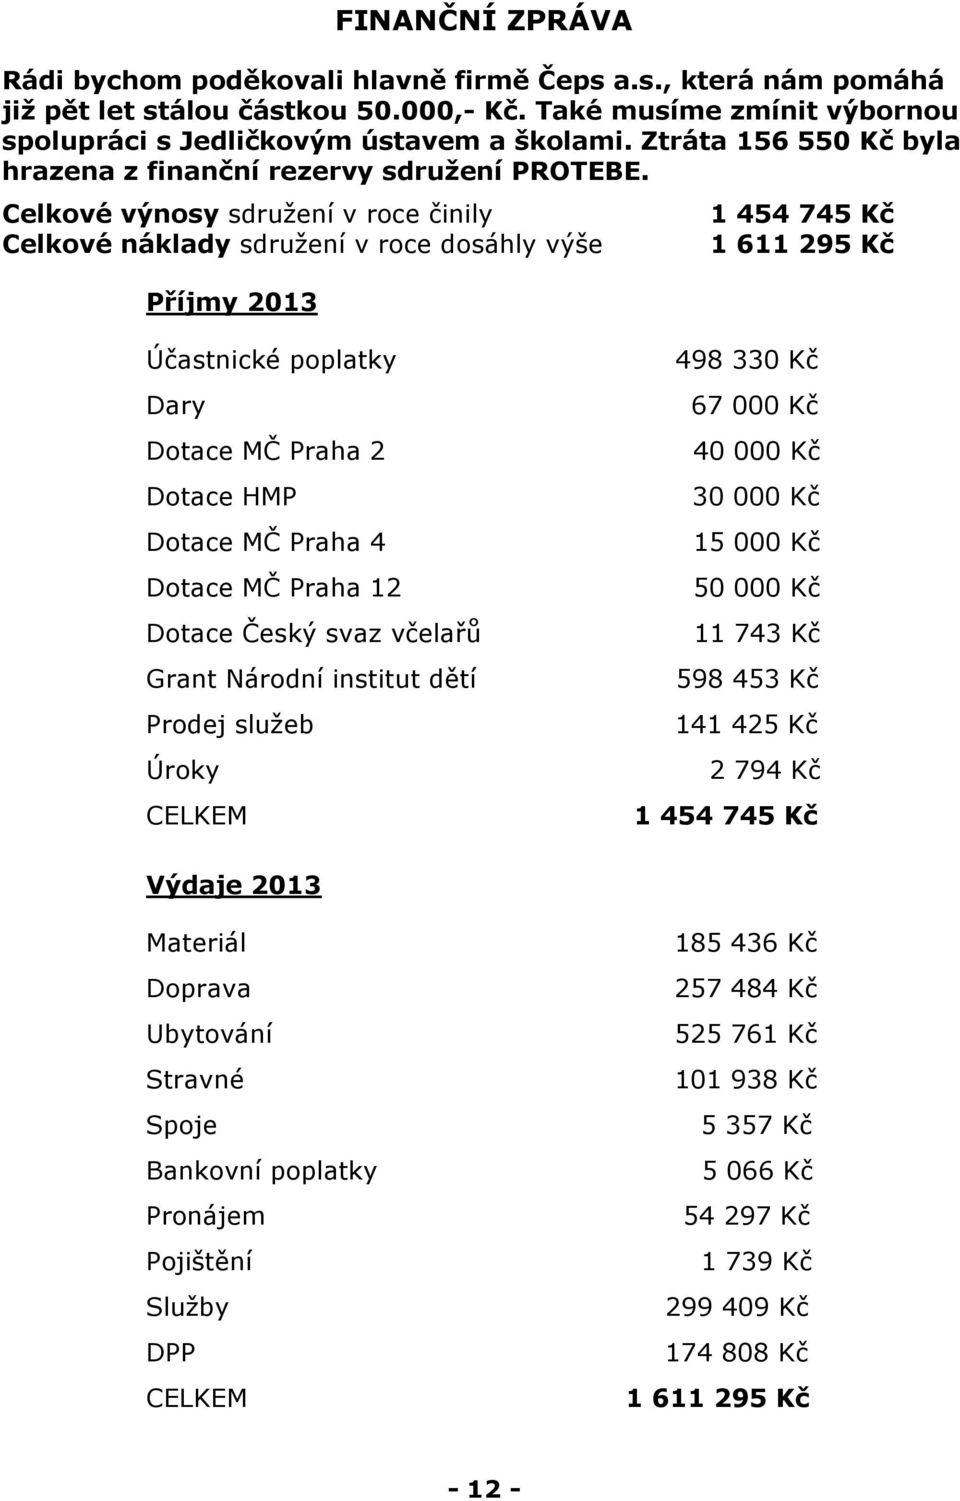 Celkové výnosy sdružení v roce činily 1 454 745 Kč Celkové náklady sdružení v roce dosáhly výše 1 611 295 Kč Příjmy 2013 Účastnické poplatky Dary Dotace MČ Praha 2 Dotace HMP Dotace MČ Praha 4 Dotace